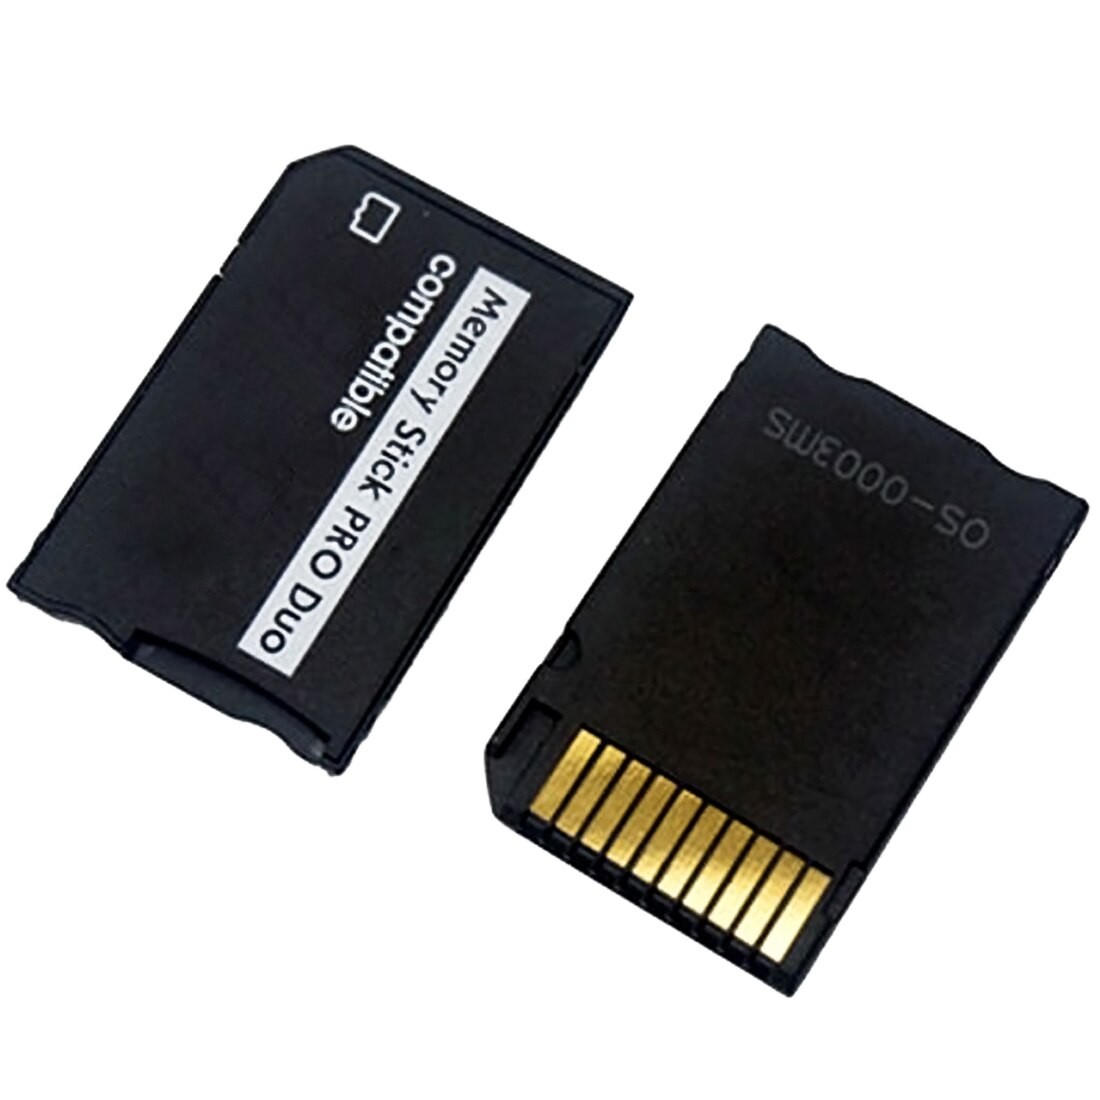 Memory Stick Pro Duo Adapter Voor Sony & Psp Serie 1Mb-128Gb Geheugenkaart Adapter Voor Micro sd Naar Ms Pro Duo Adapter Conventer